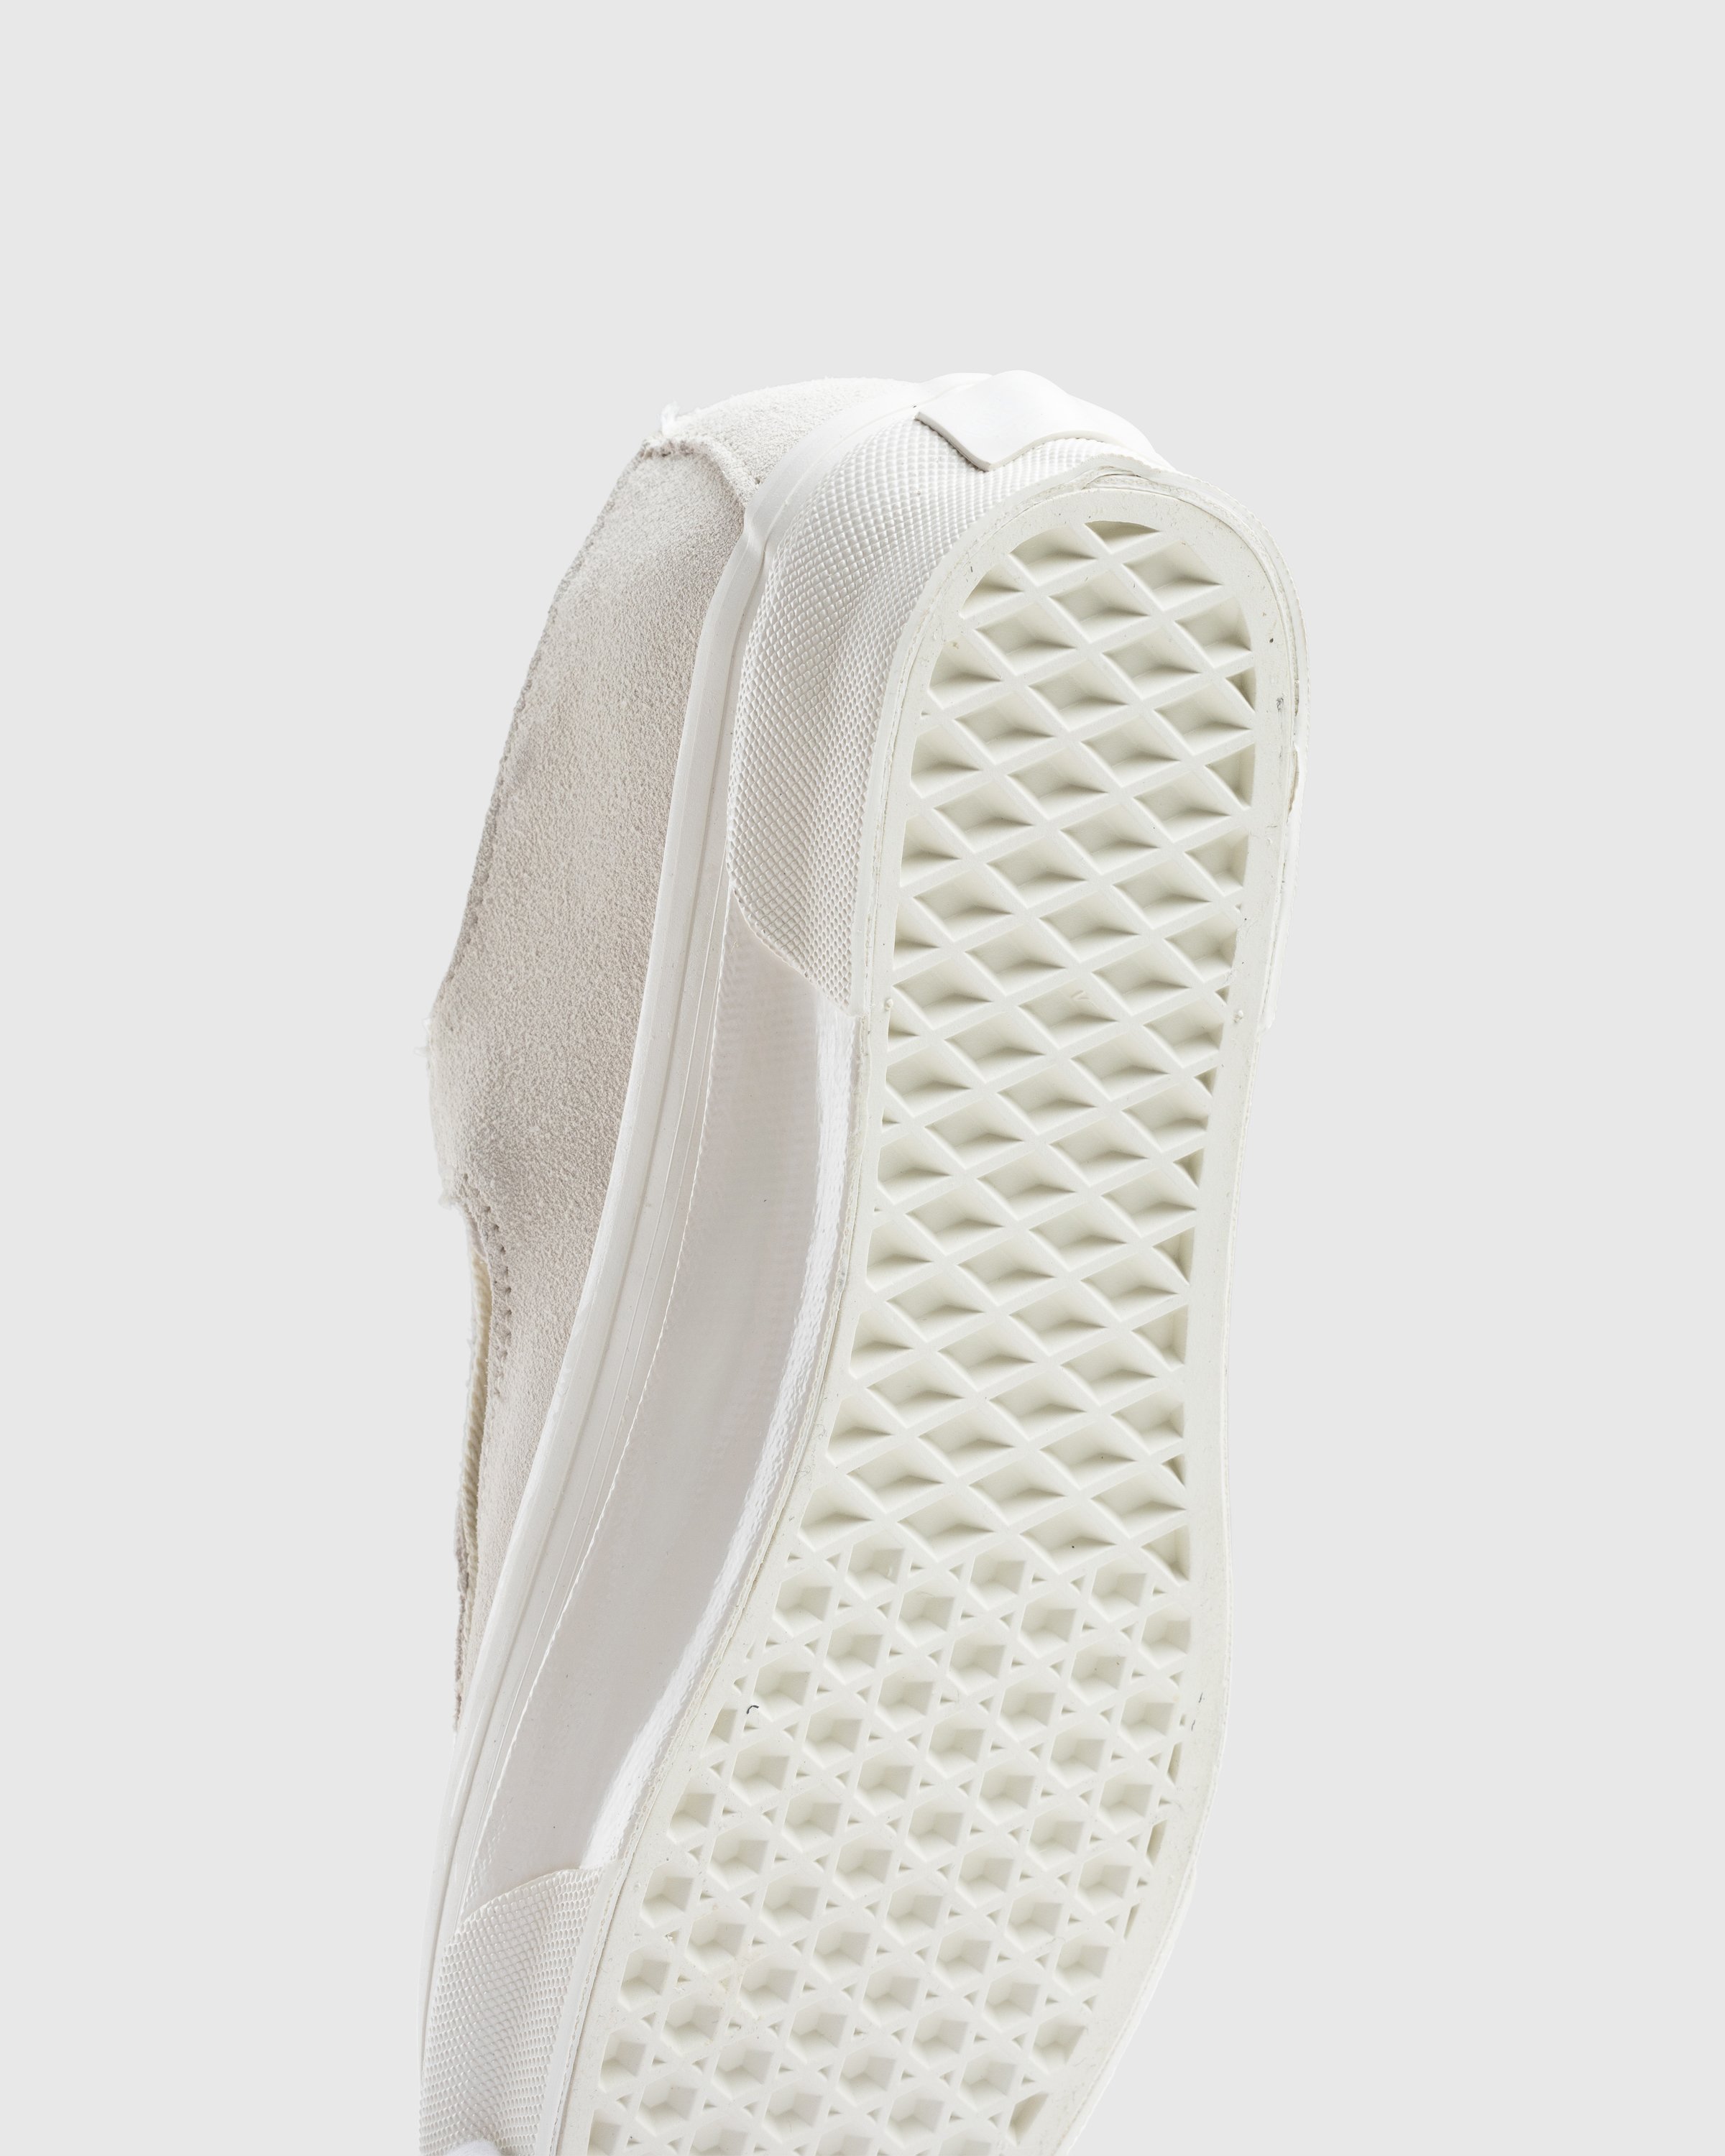 Vans - OG Style 93 LX Marshmallow - Footwear - White - Image 8